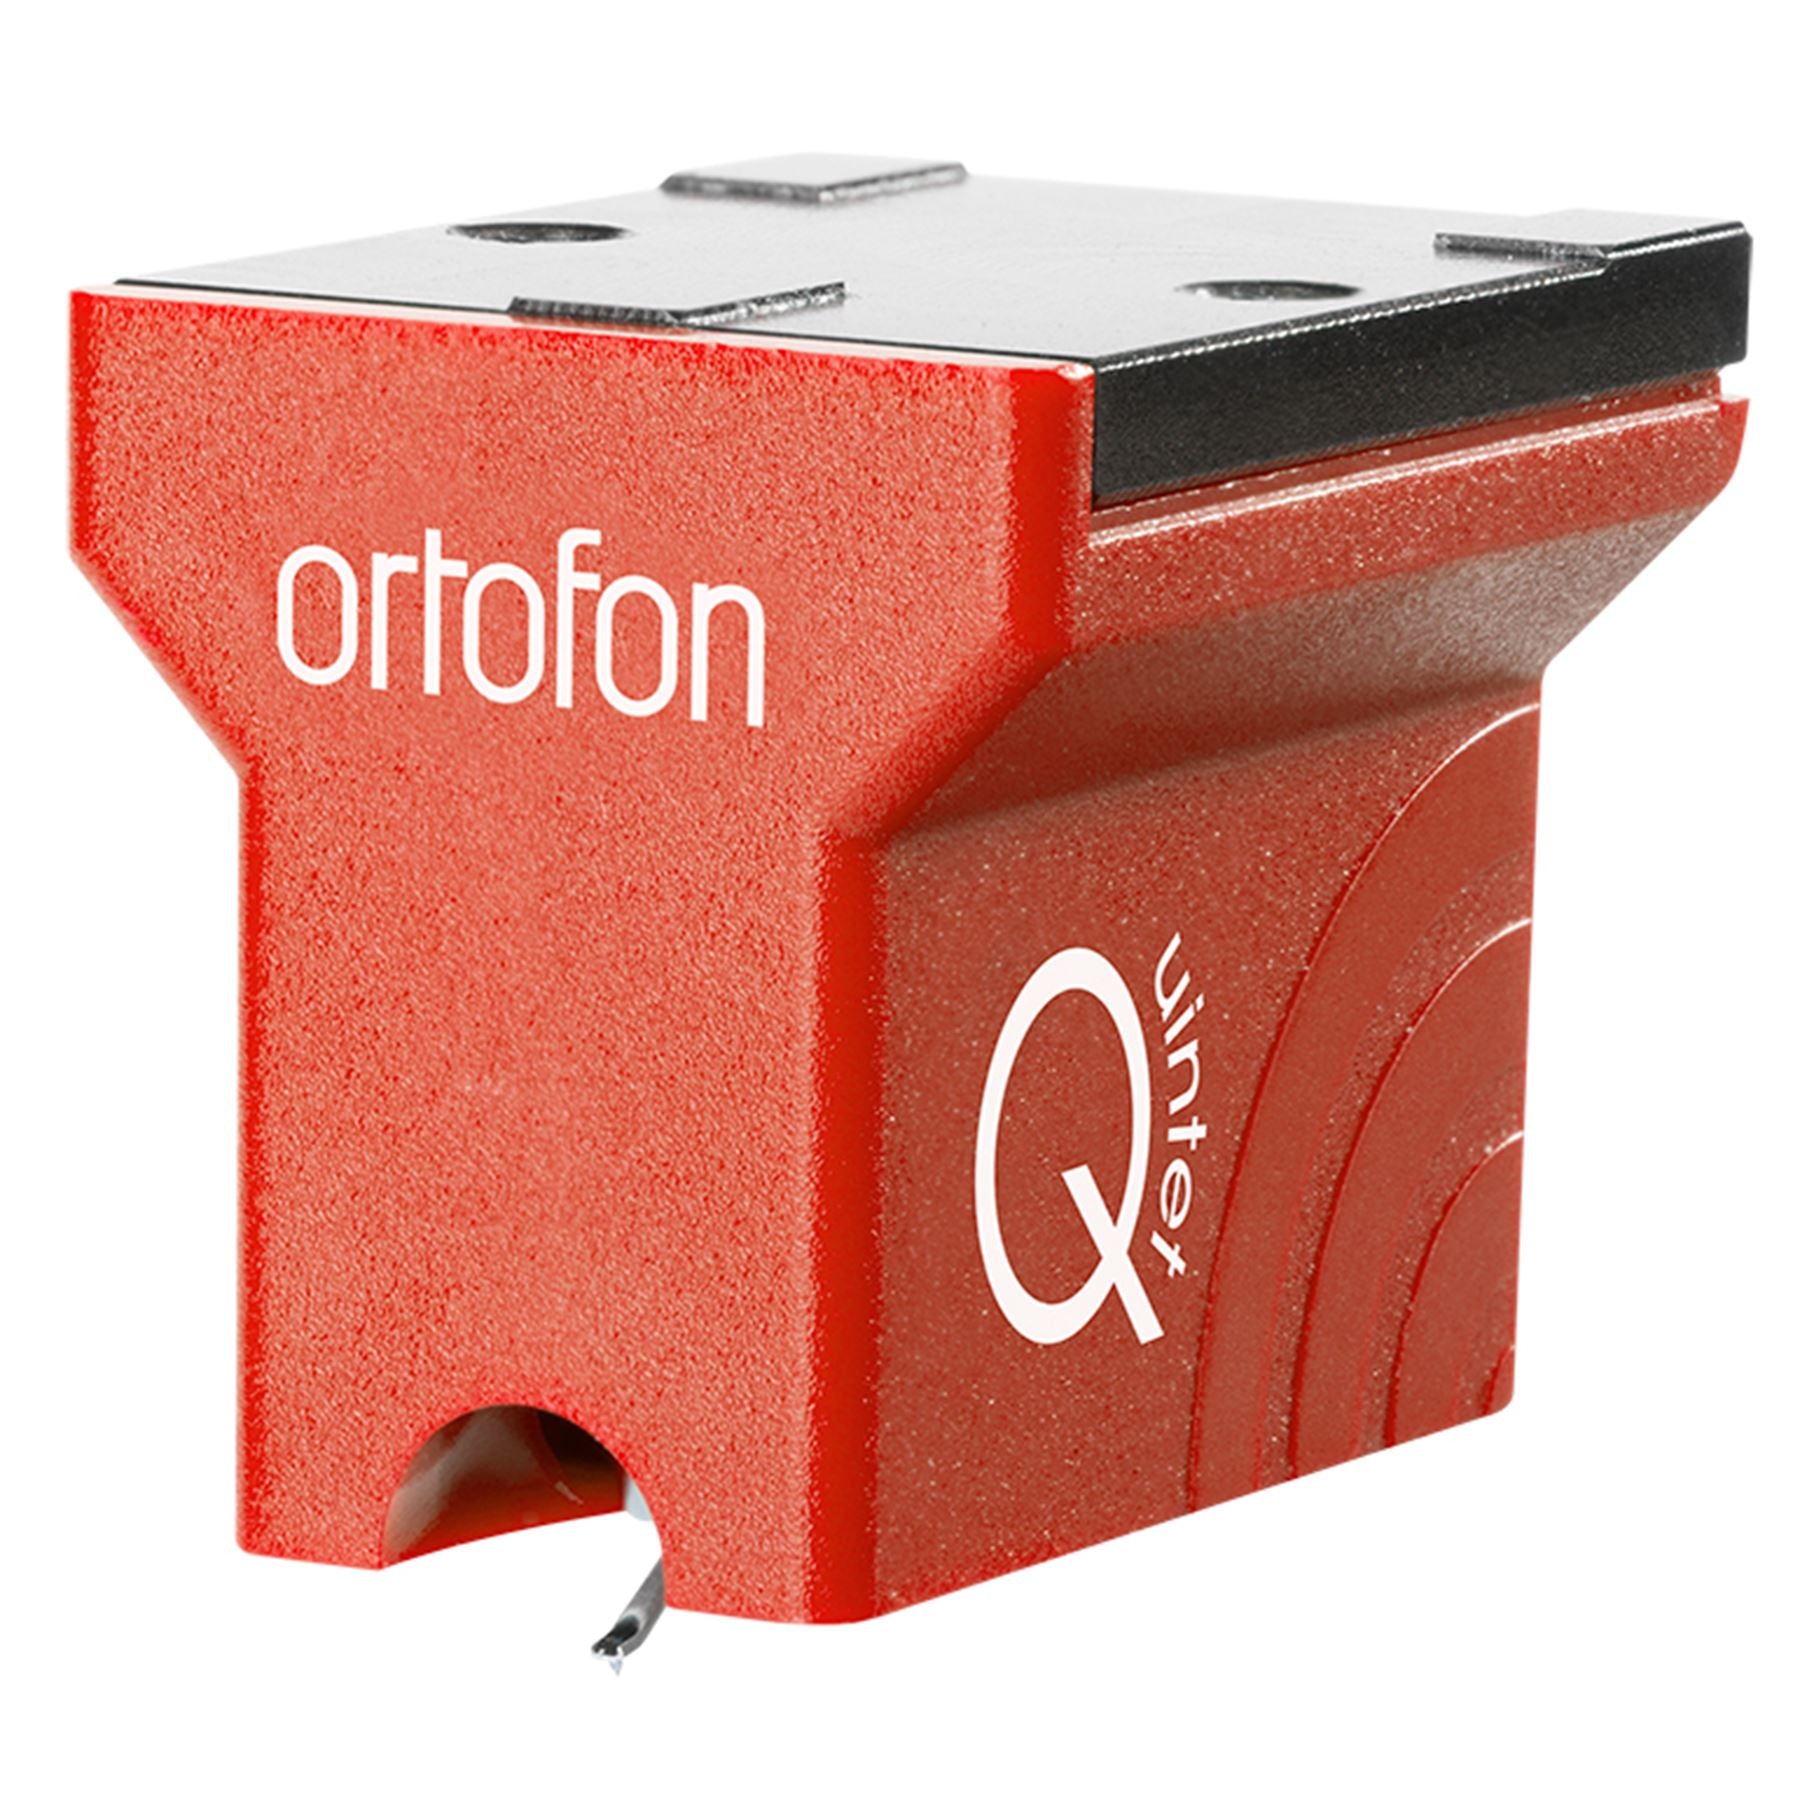 Ortofon Hi-Fi MC Quintet Red Moving Coil Cartridge